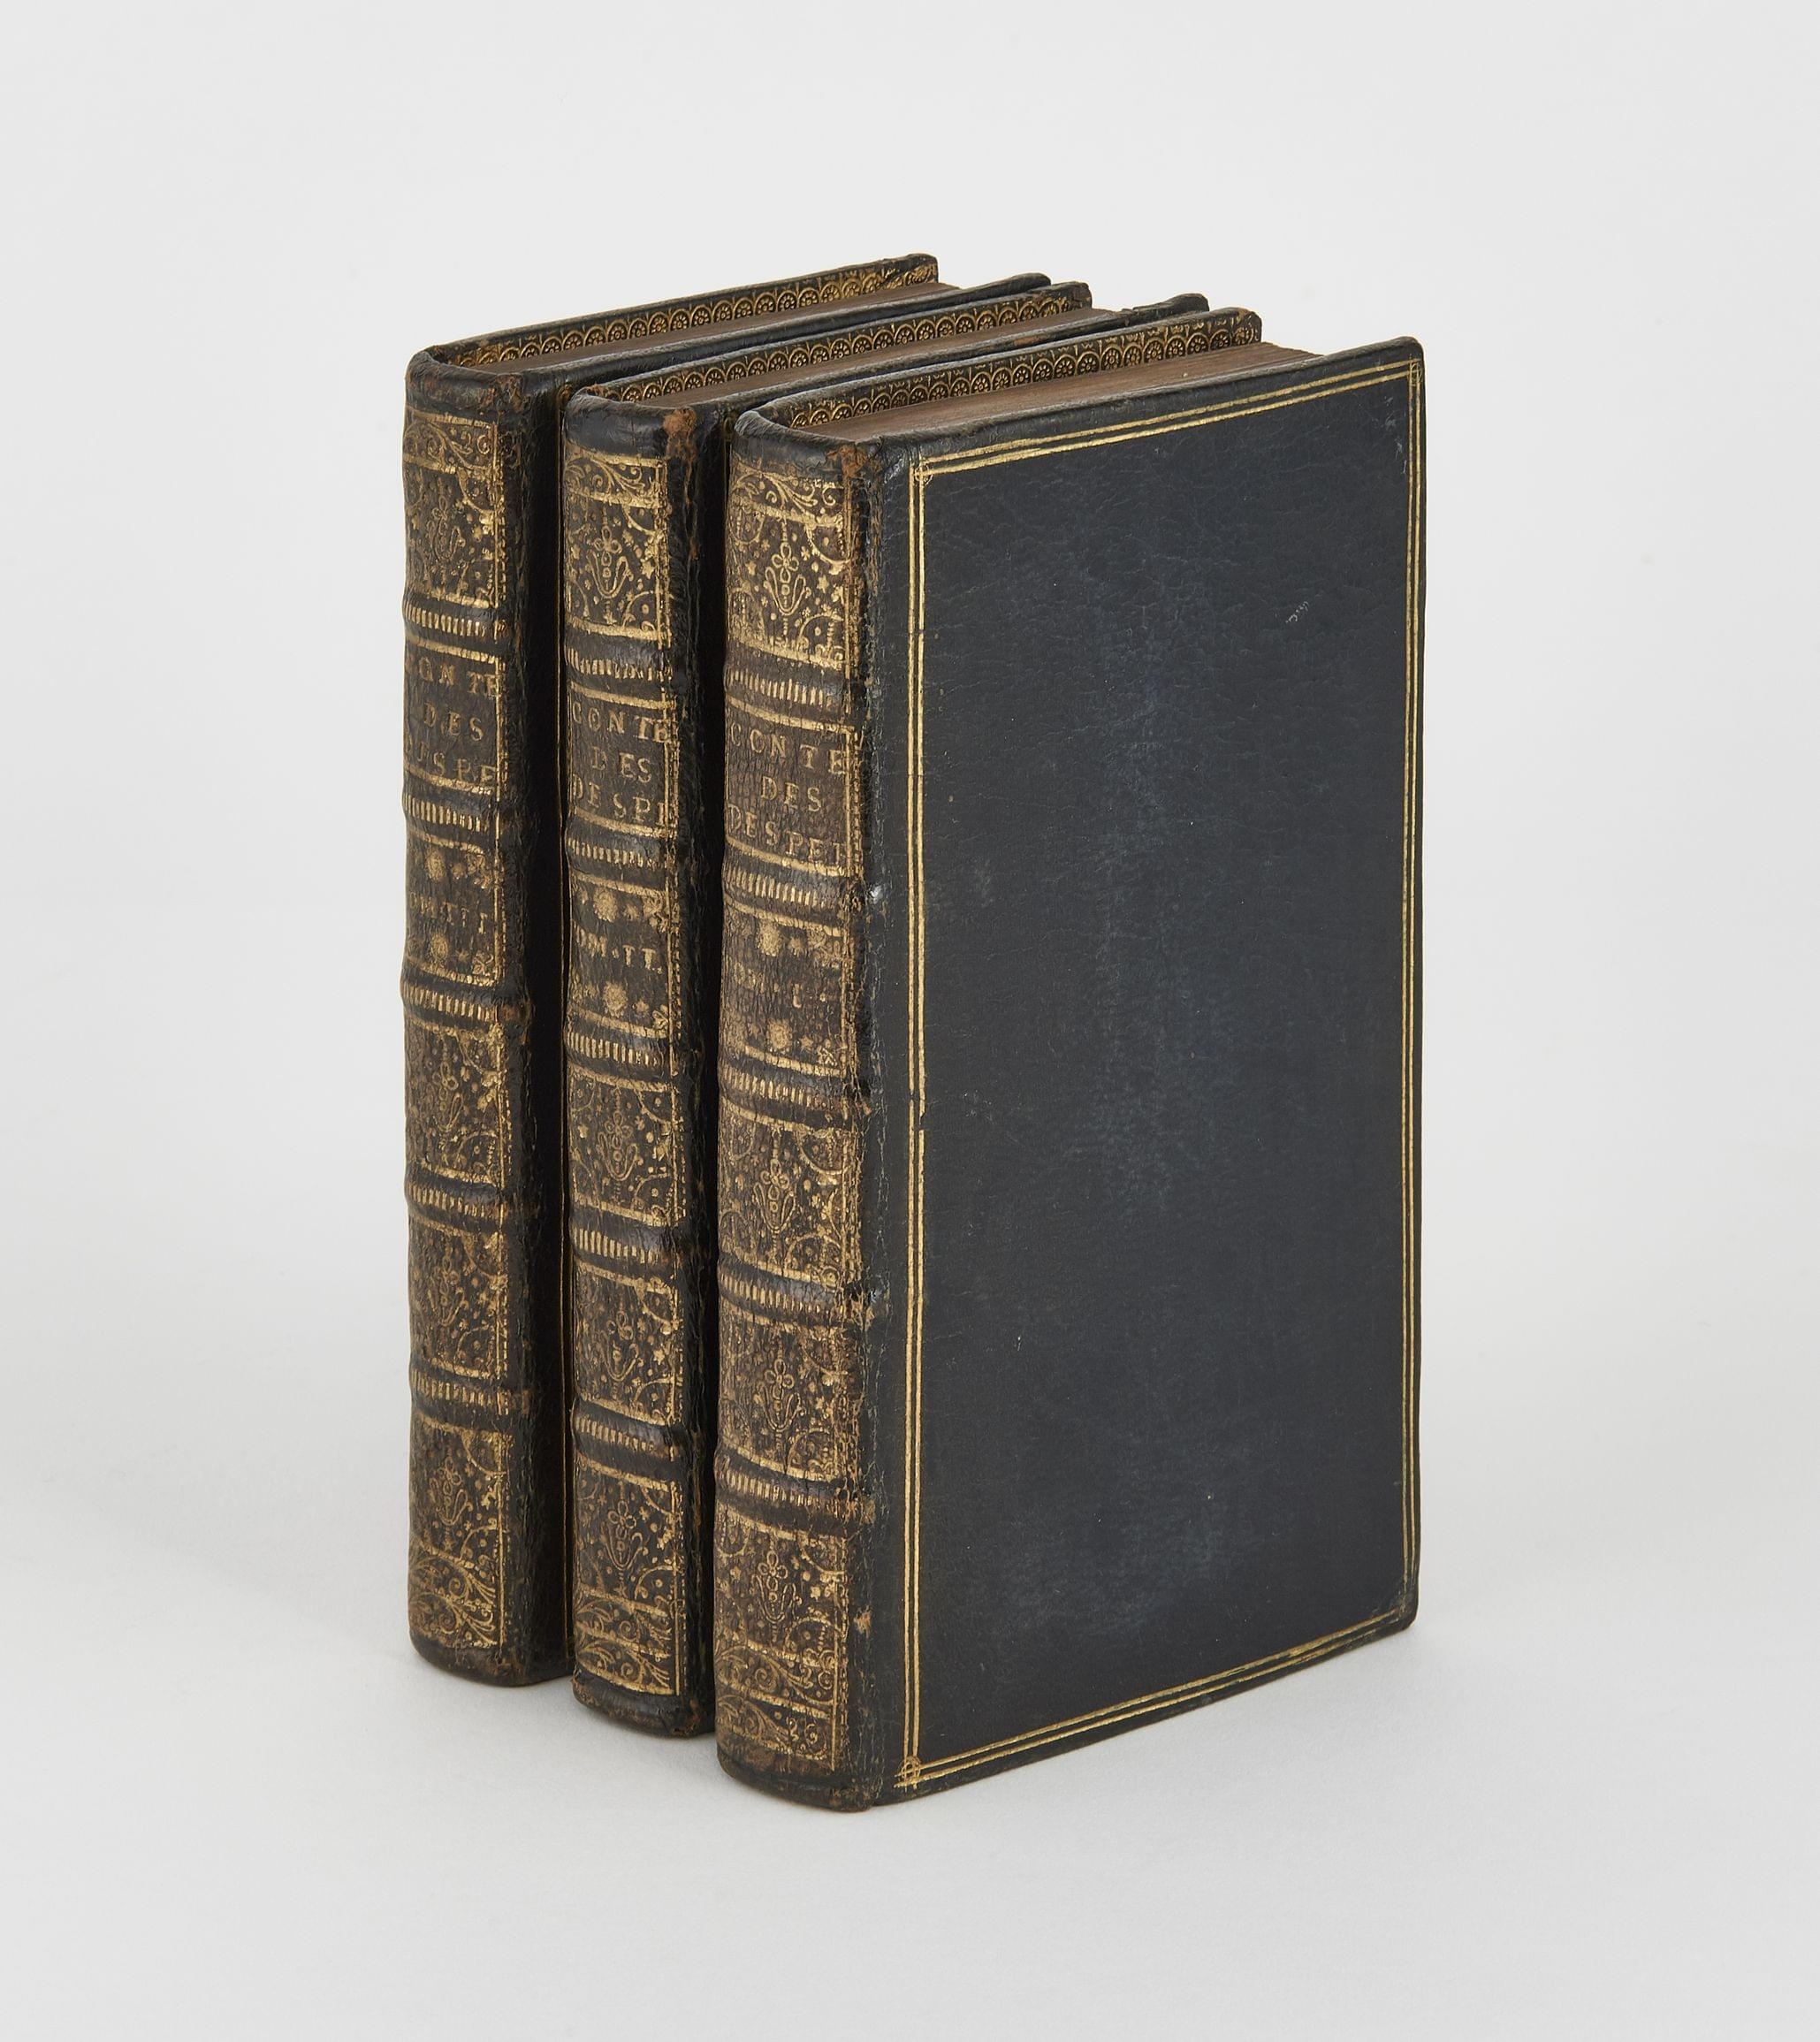 DES PERIERS (Bonaventure): Les Contes ou les Nouvelles Récréations et Joyeux Devis. Amsterdam, Chatelain, 1735; 